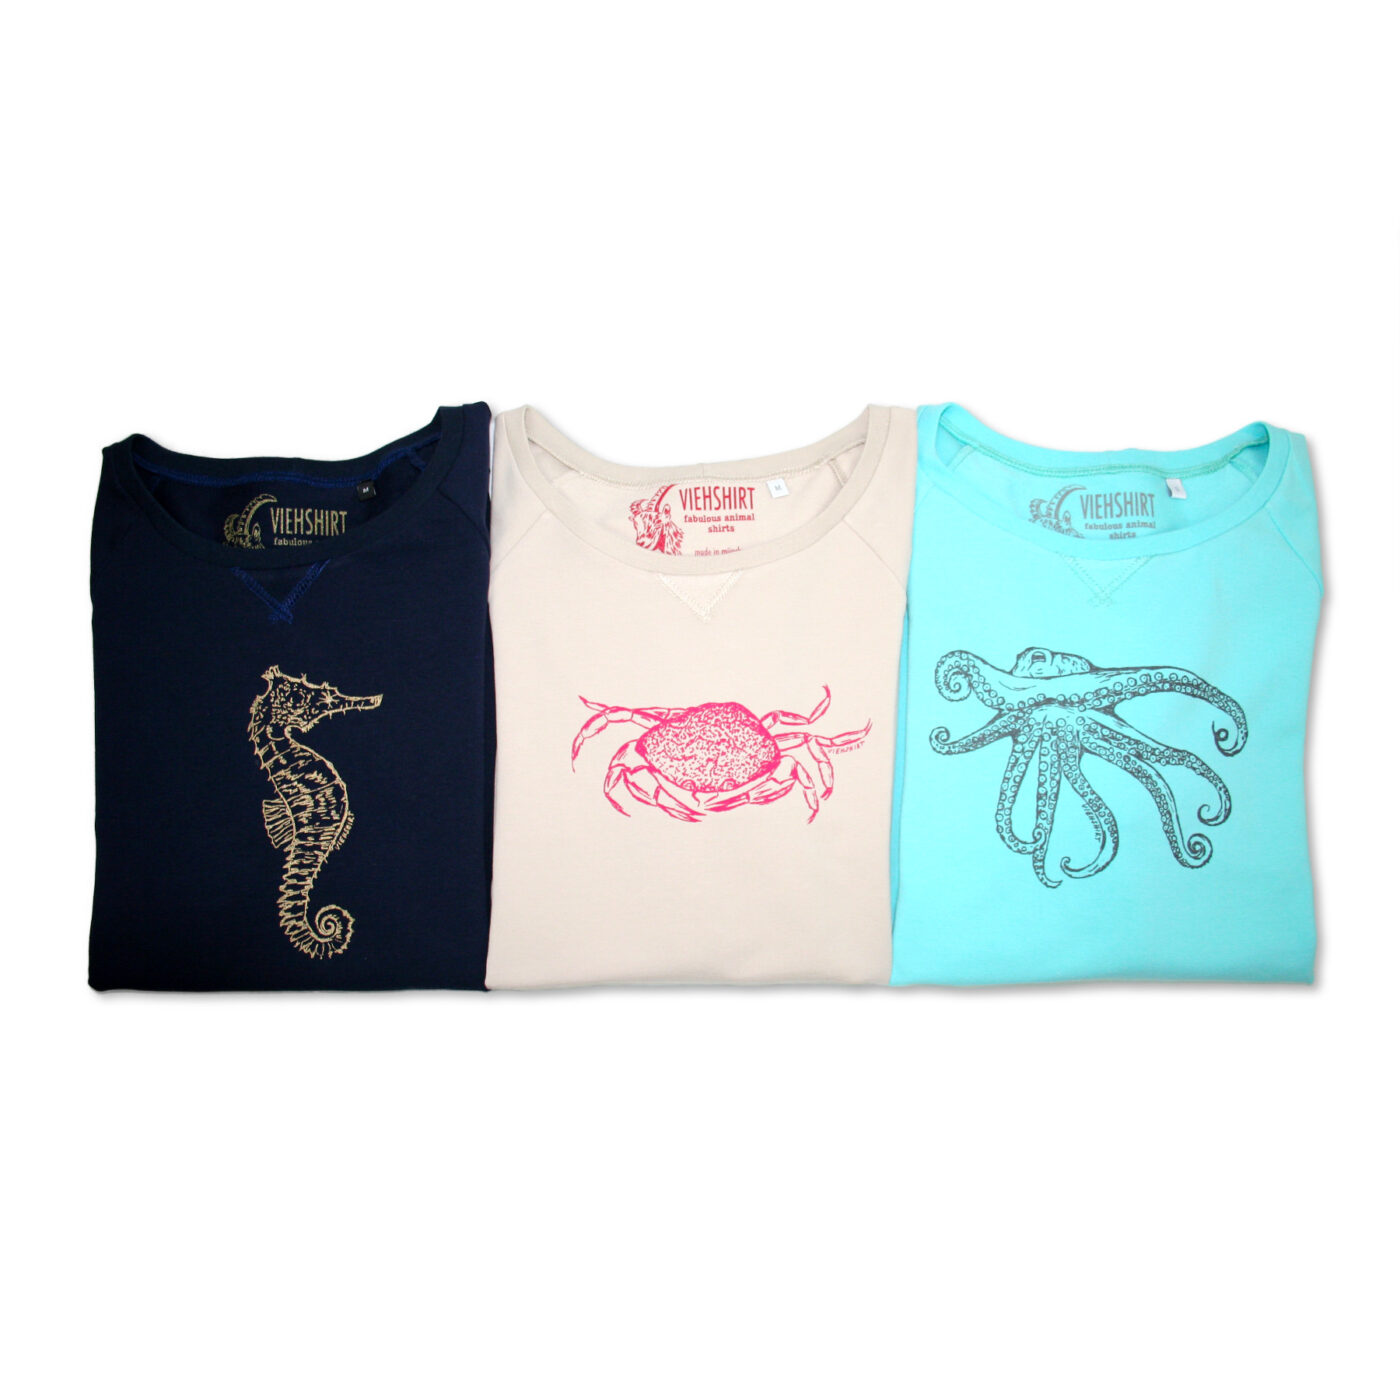 Drei zusammengelegte Sweater in den Farben dunkelblau, sand und türkis mit jeweils einem Meerestier-Siebdruckmotiv: Seepferdchen, Krabbe und Oktopus